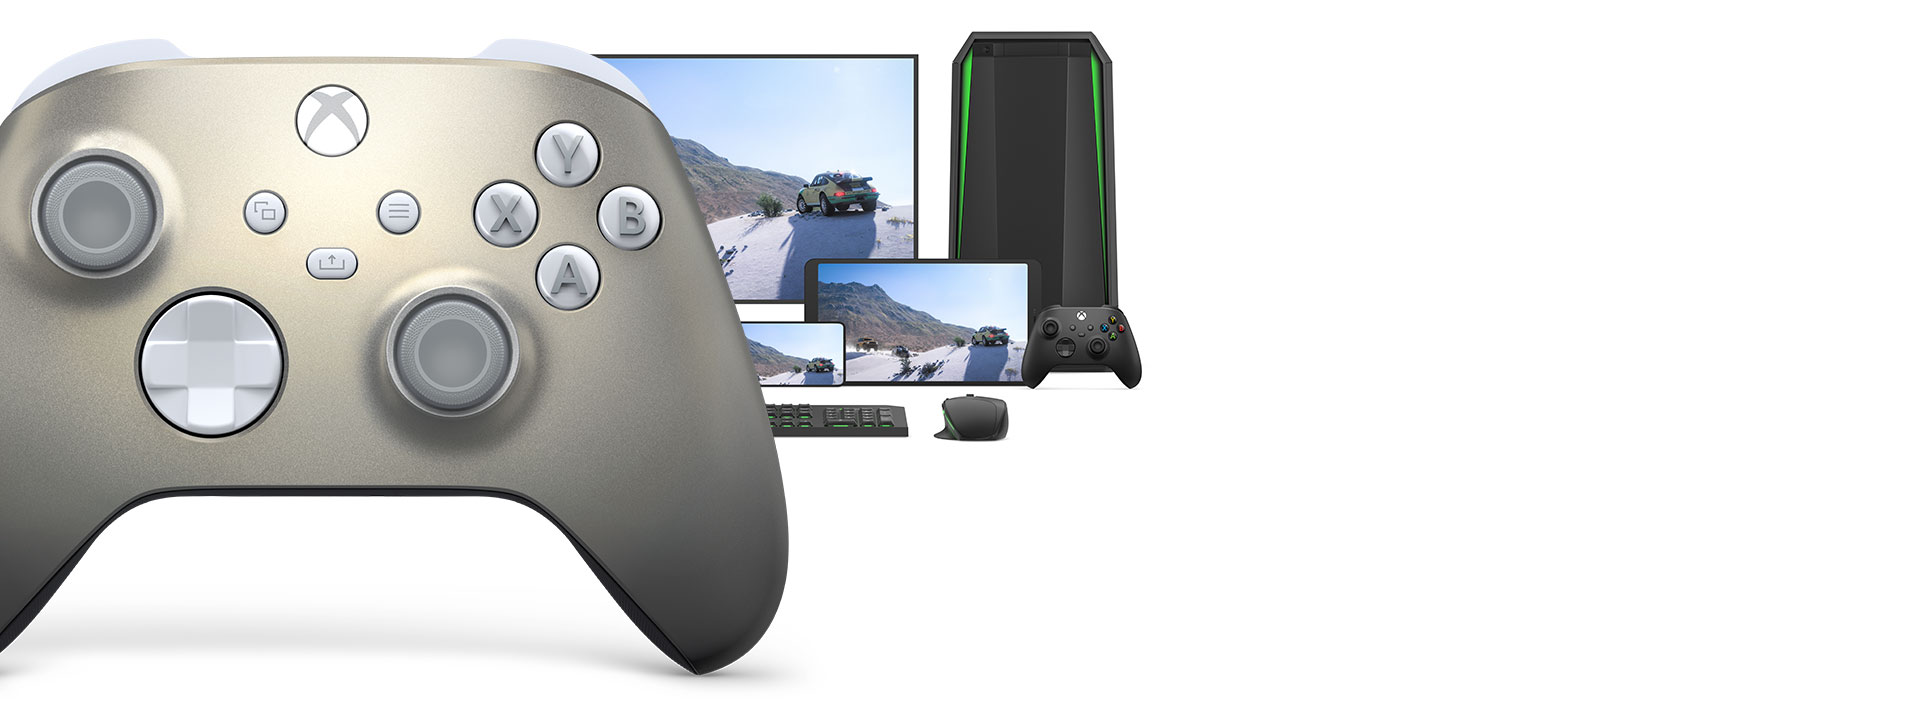 Bezdrátový ovladač pro Xbox – Lunar Shift Special Edition s počítačem, televizí a konzolí Xbox Series S.